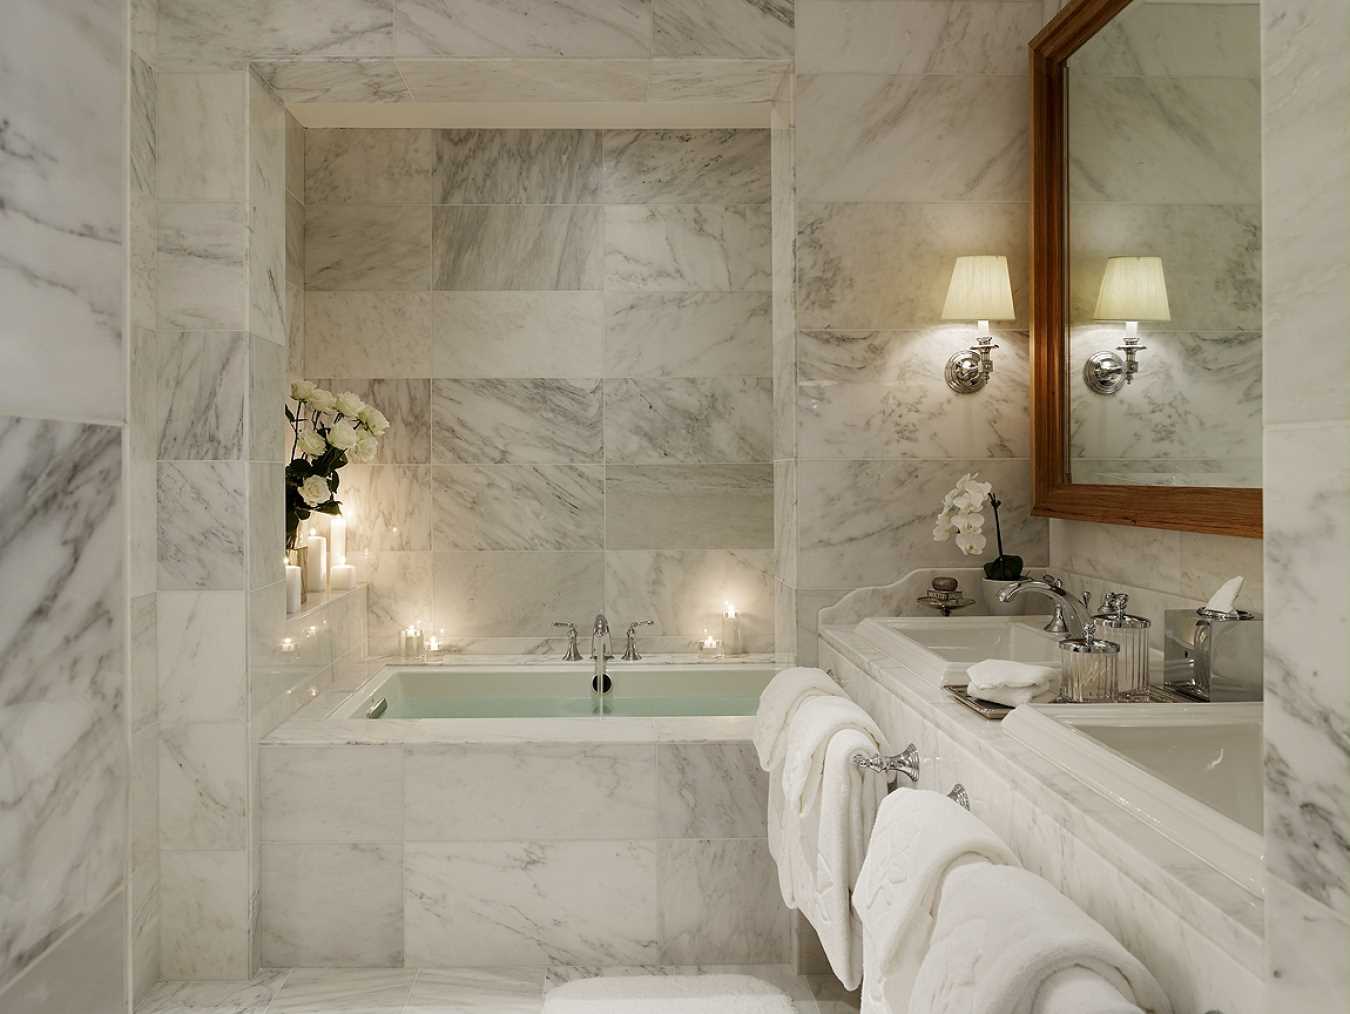 l'idea di un interno luminoso del bagno in stile classico